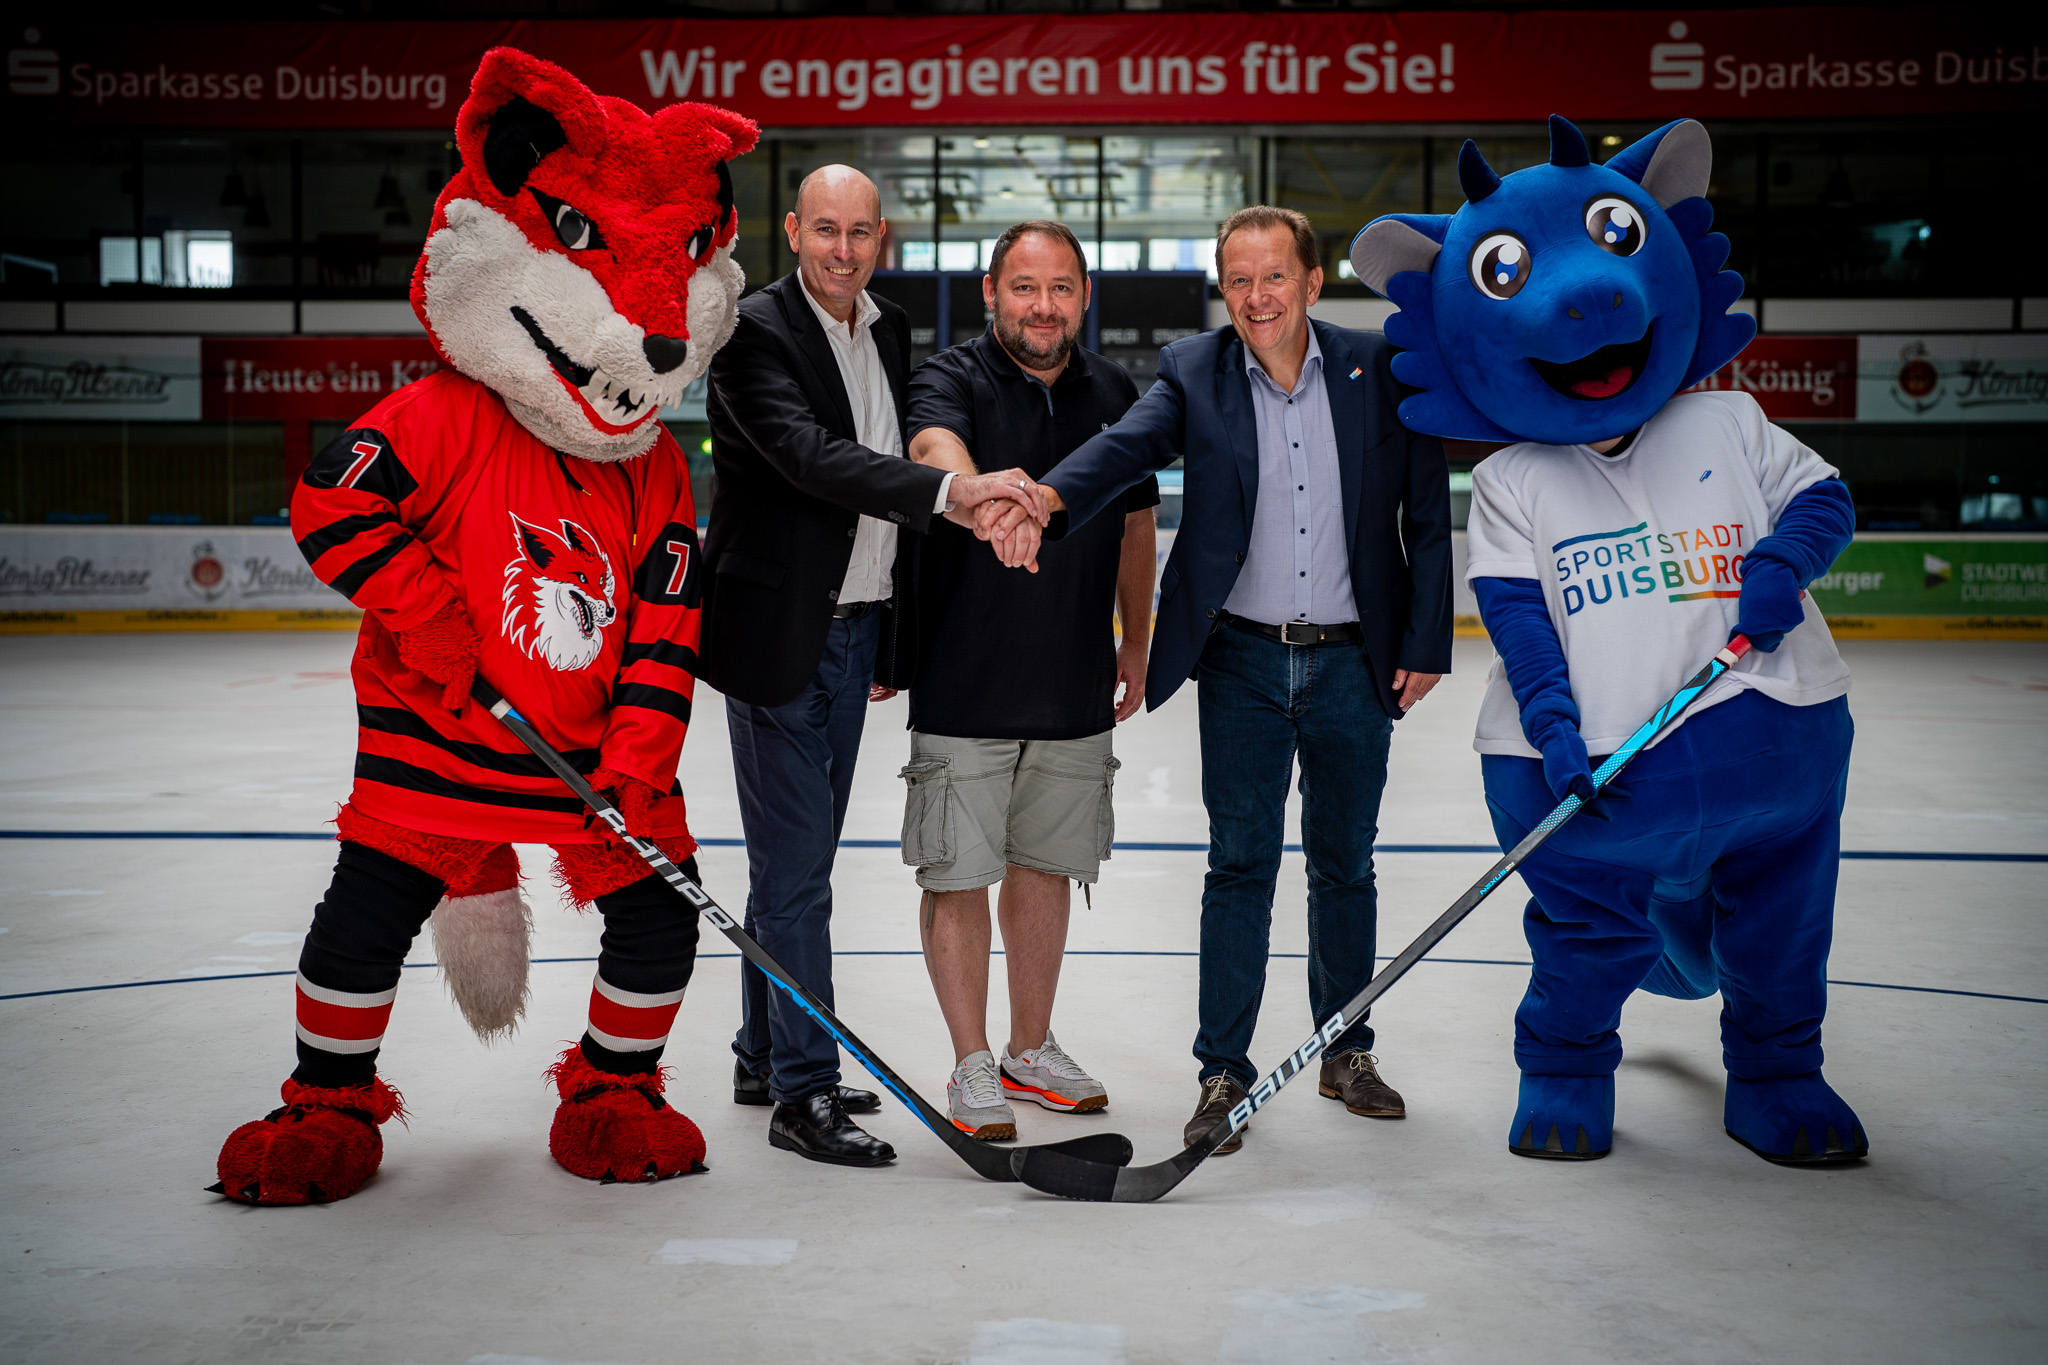 Geschäftsführern Uwe Kluge (rechts) Christoph Späh (links). Daneben die Maskottchen Manni und DUBLU. Foto: Füchse Duisburg